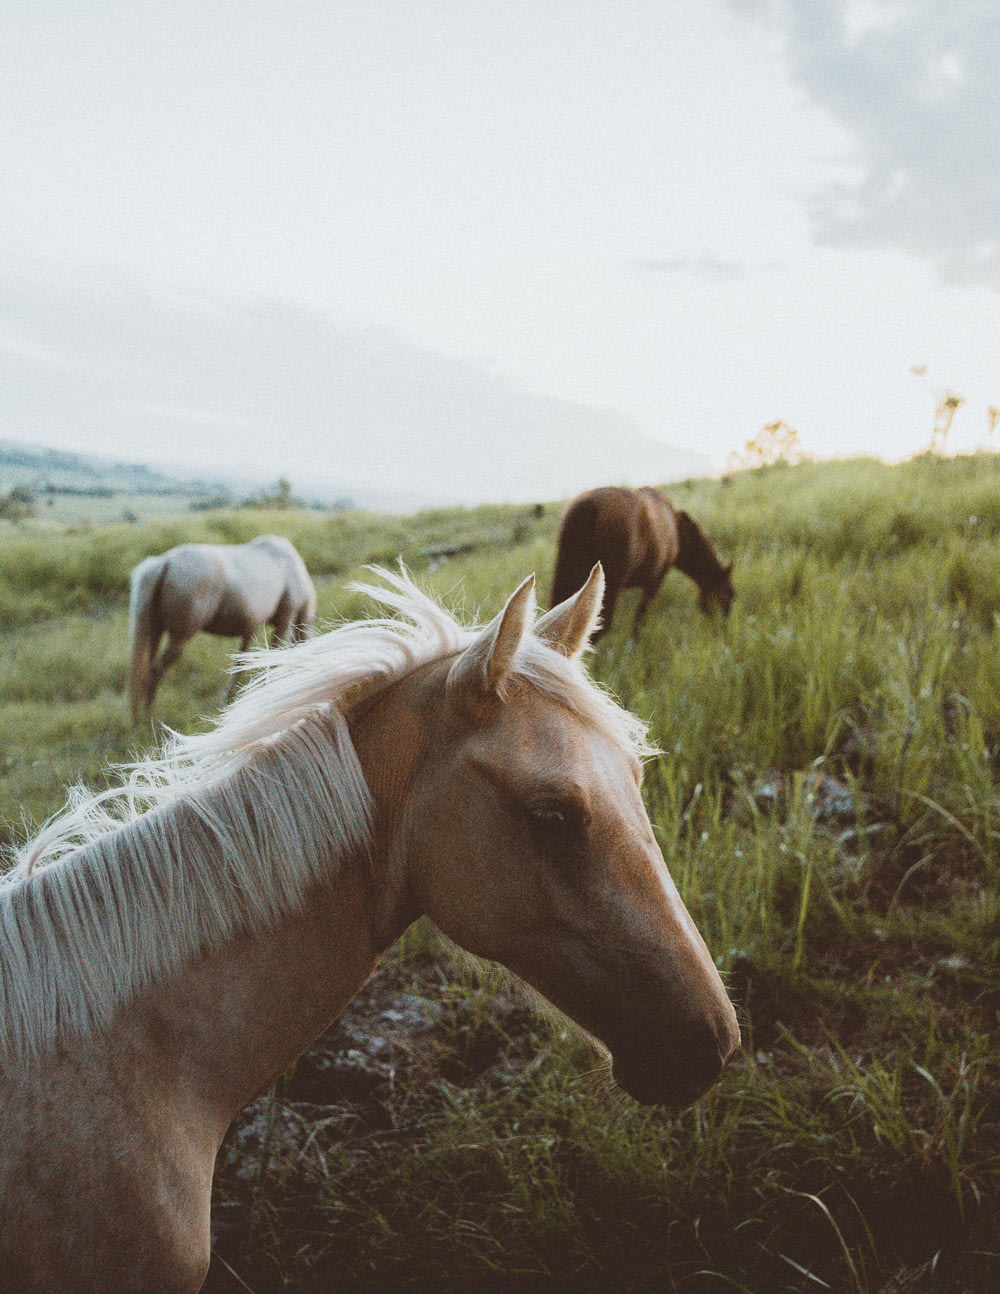 tilt-shift lens photography of horse herd on grassland during daytime